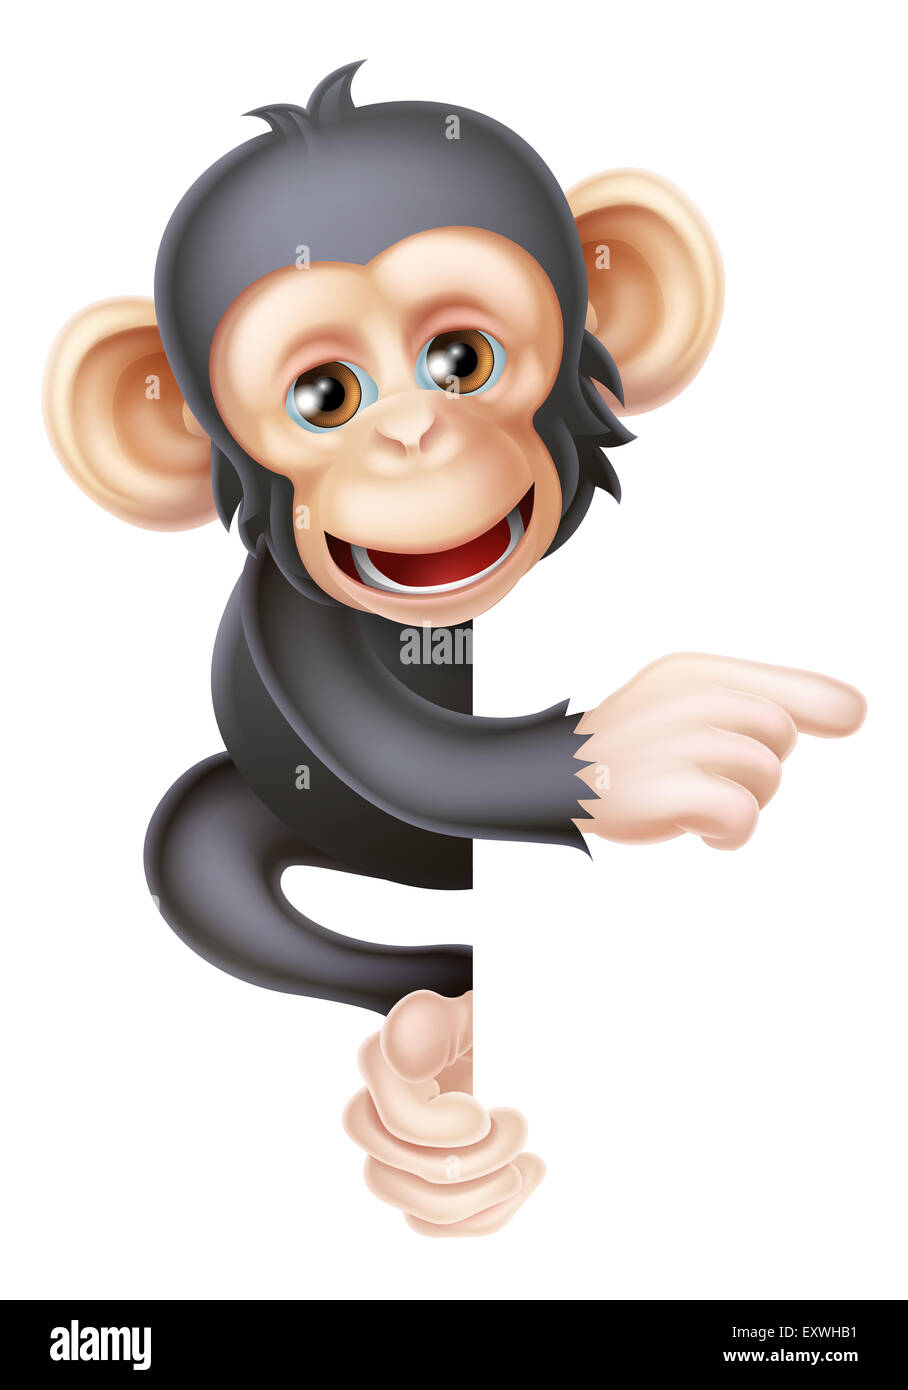 Personaje de dibujos animados mono chimpancé como mascota peeking alrededor  de un signo y apuntando a ella Fotografía de stock - Alamy